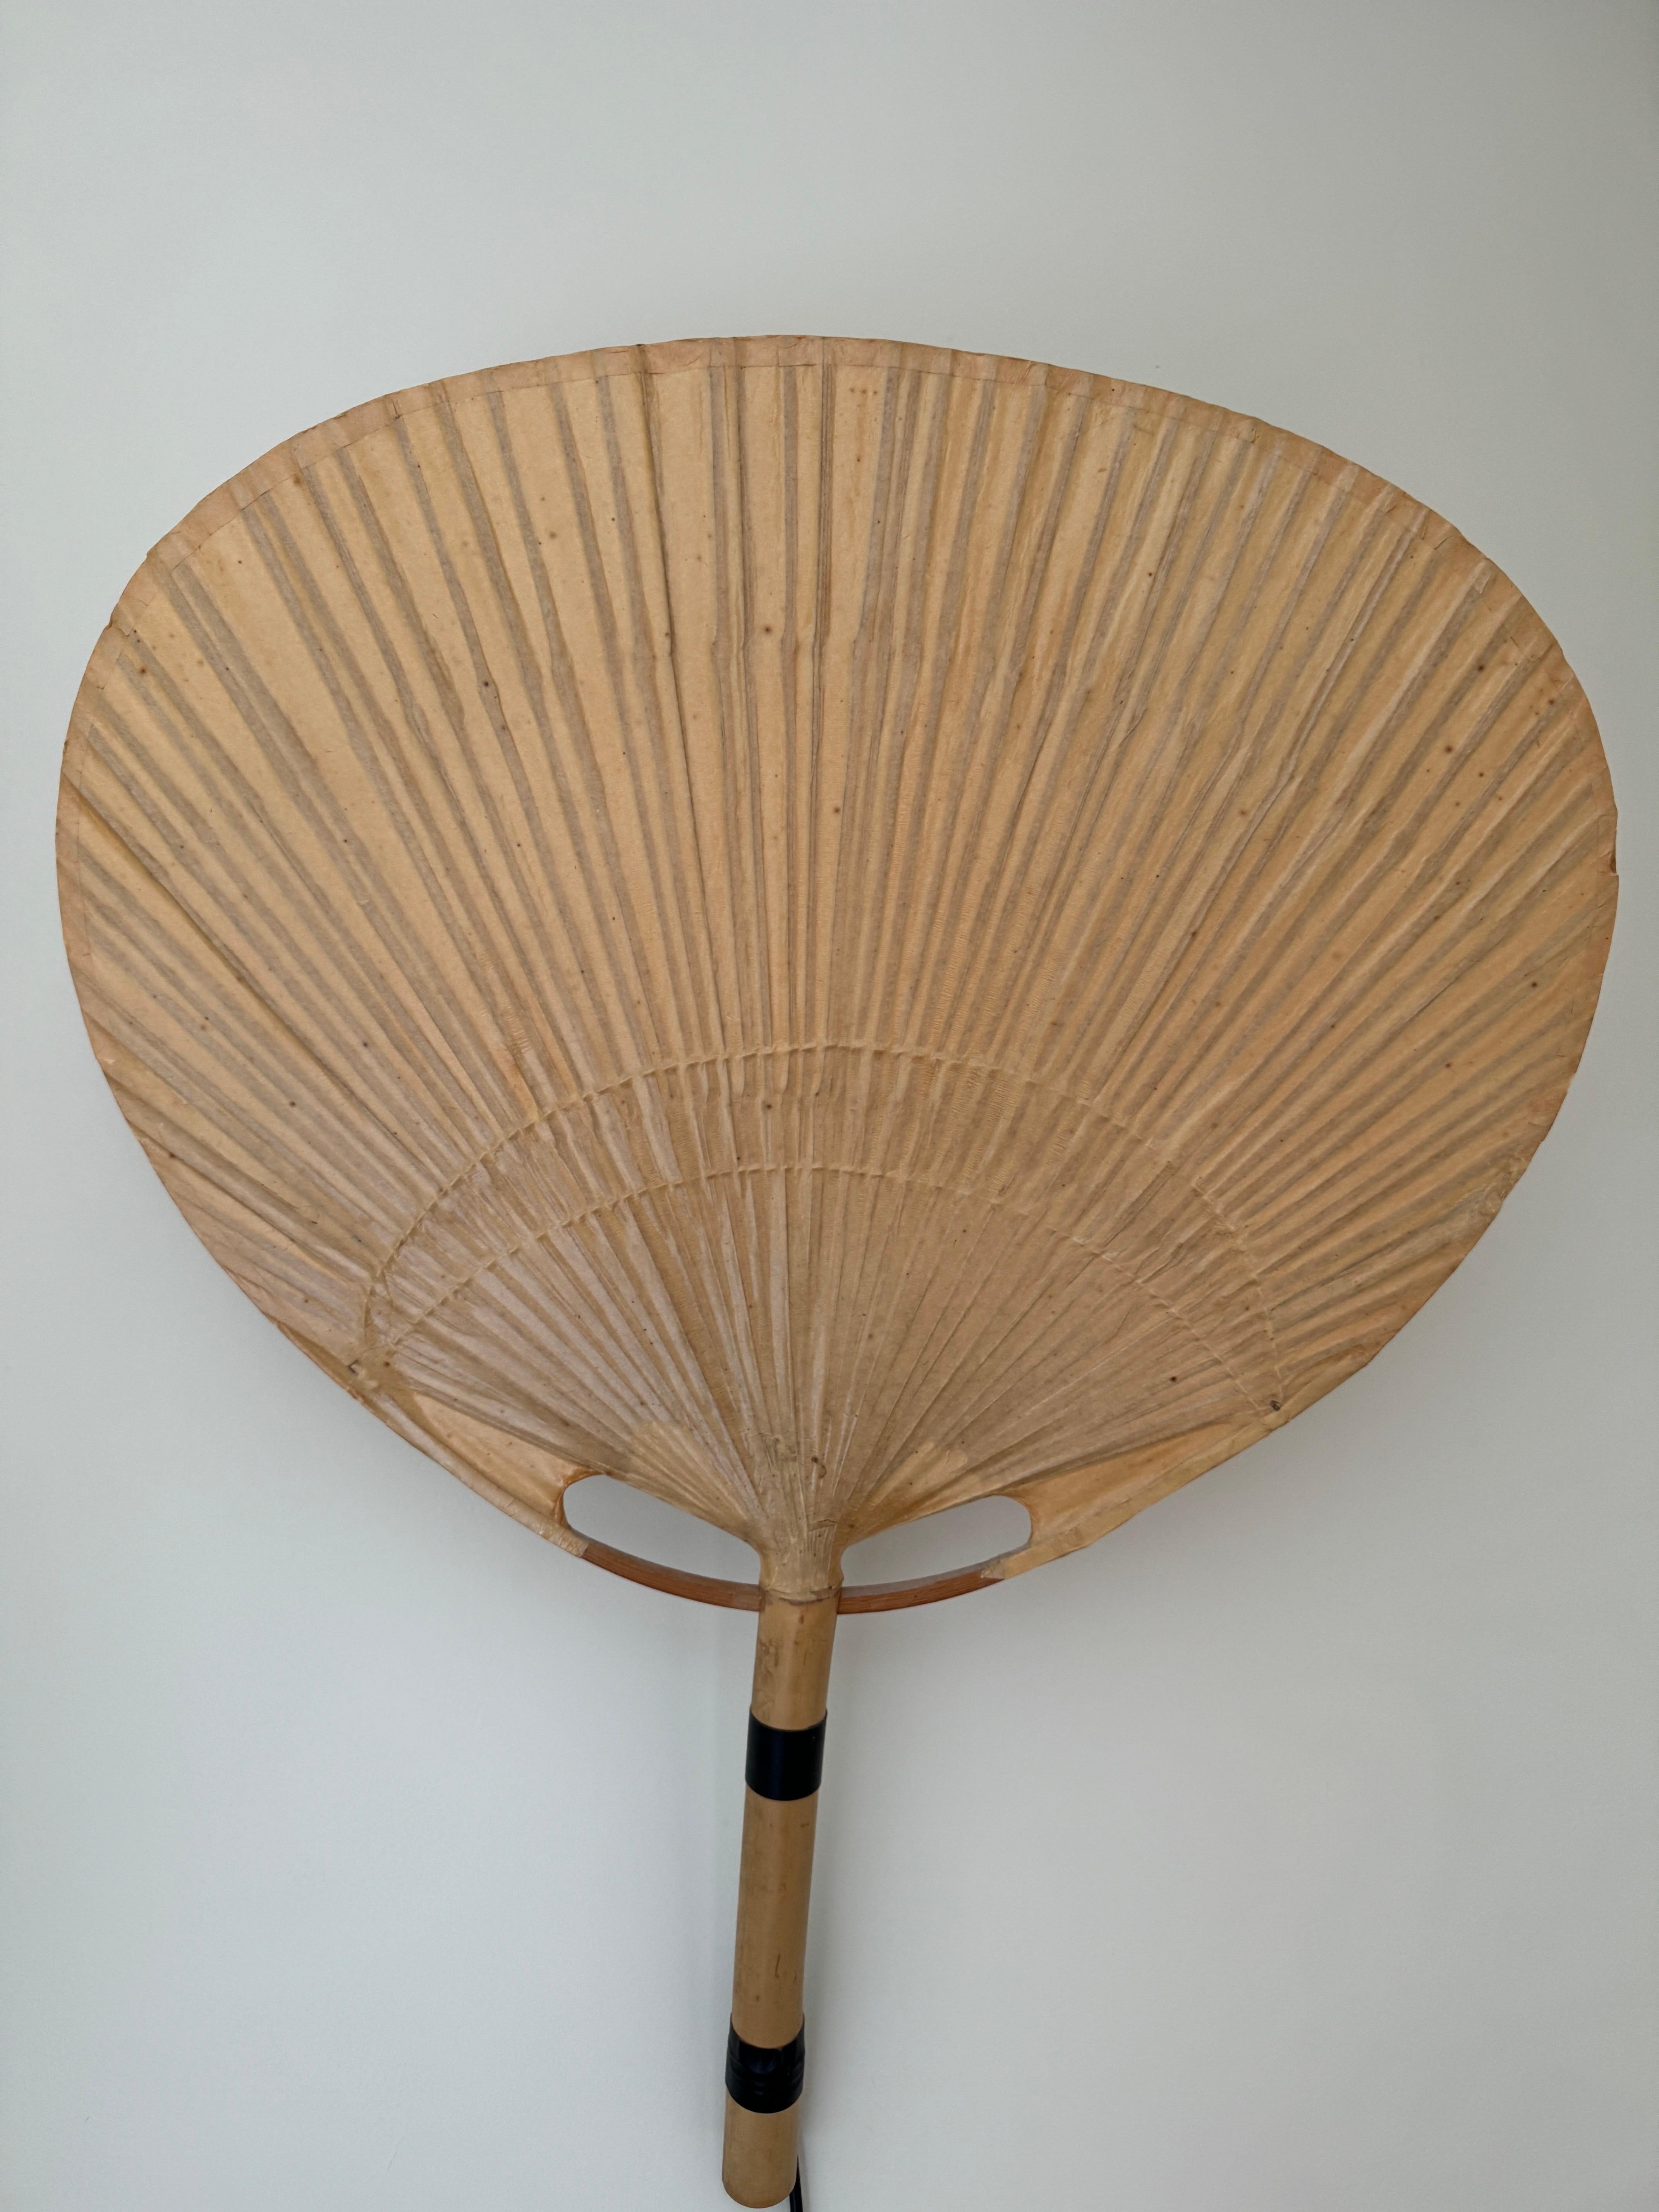 Ein äußerst seltenes Paar Uchiwa III Wandleuchten, entworfen von Ingo Maurer in den 1970er Jahren und hergestellt von M-Design München. Die Uchiwa III ist eine mittlere Version der Wandleuchten der Uchiwa-Serie. Diese Wandlampen bestehen aus Bambus